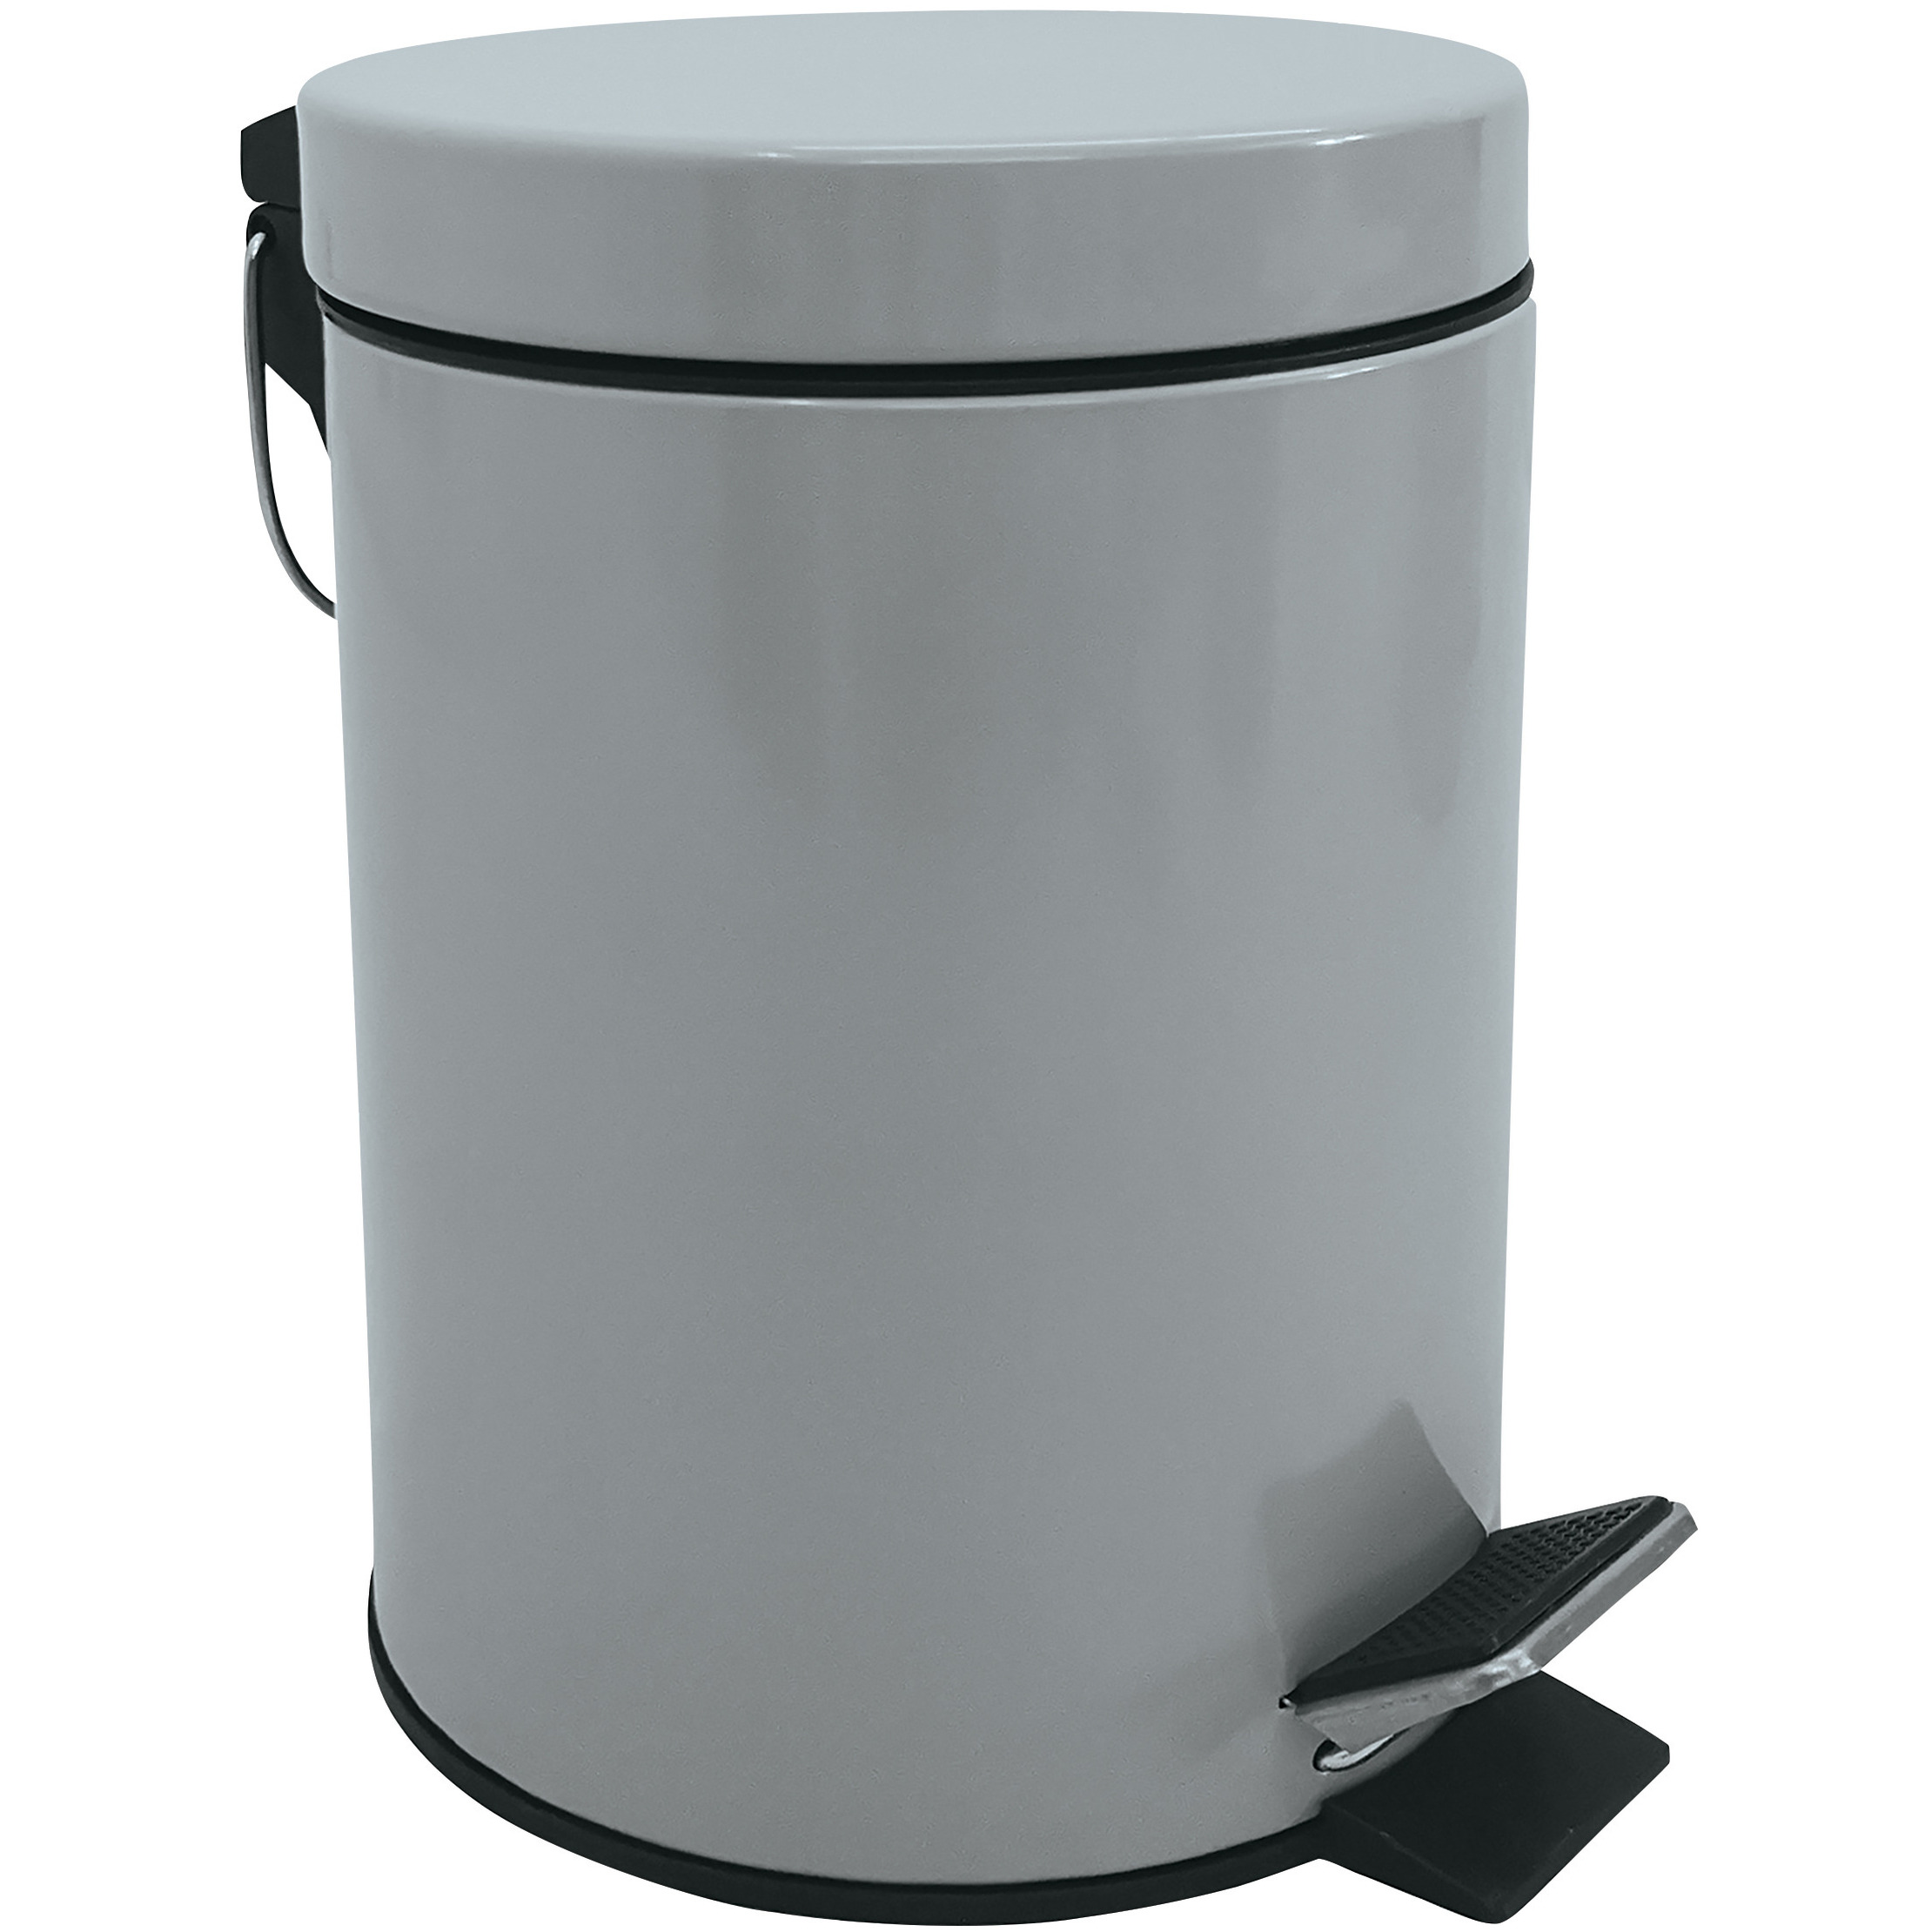 Prullenbak-pedaalemmer metaal grijs 3 liter 17 x 25 cm Badkamer-toilet